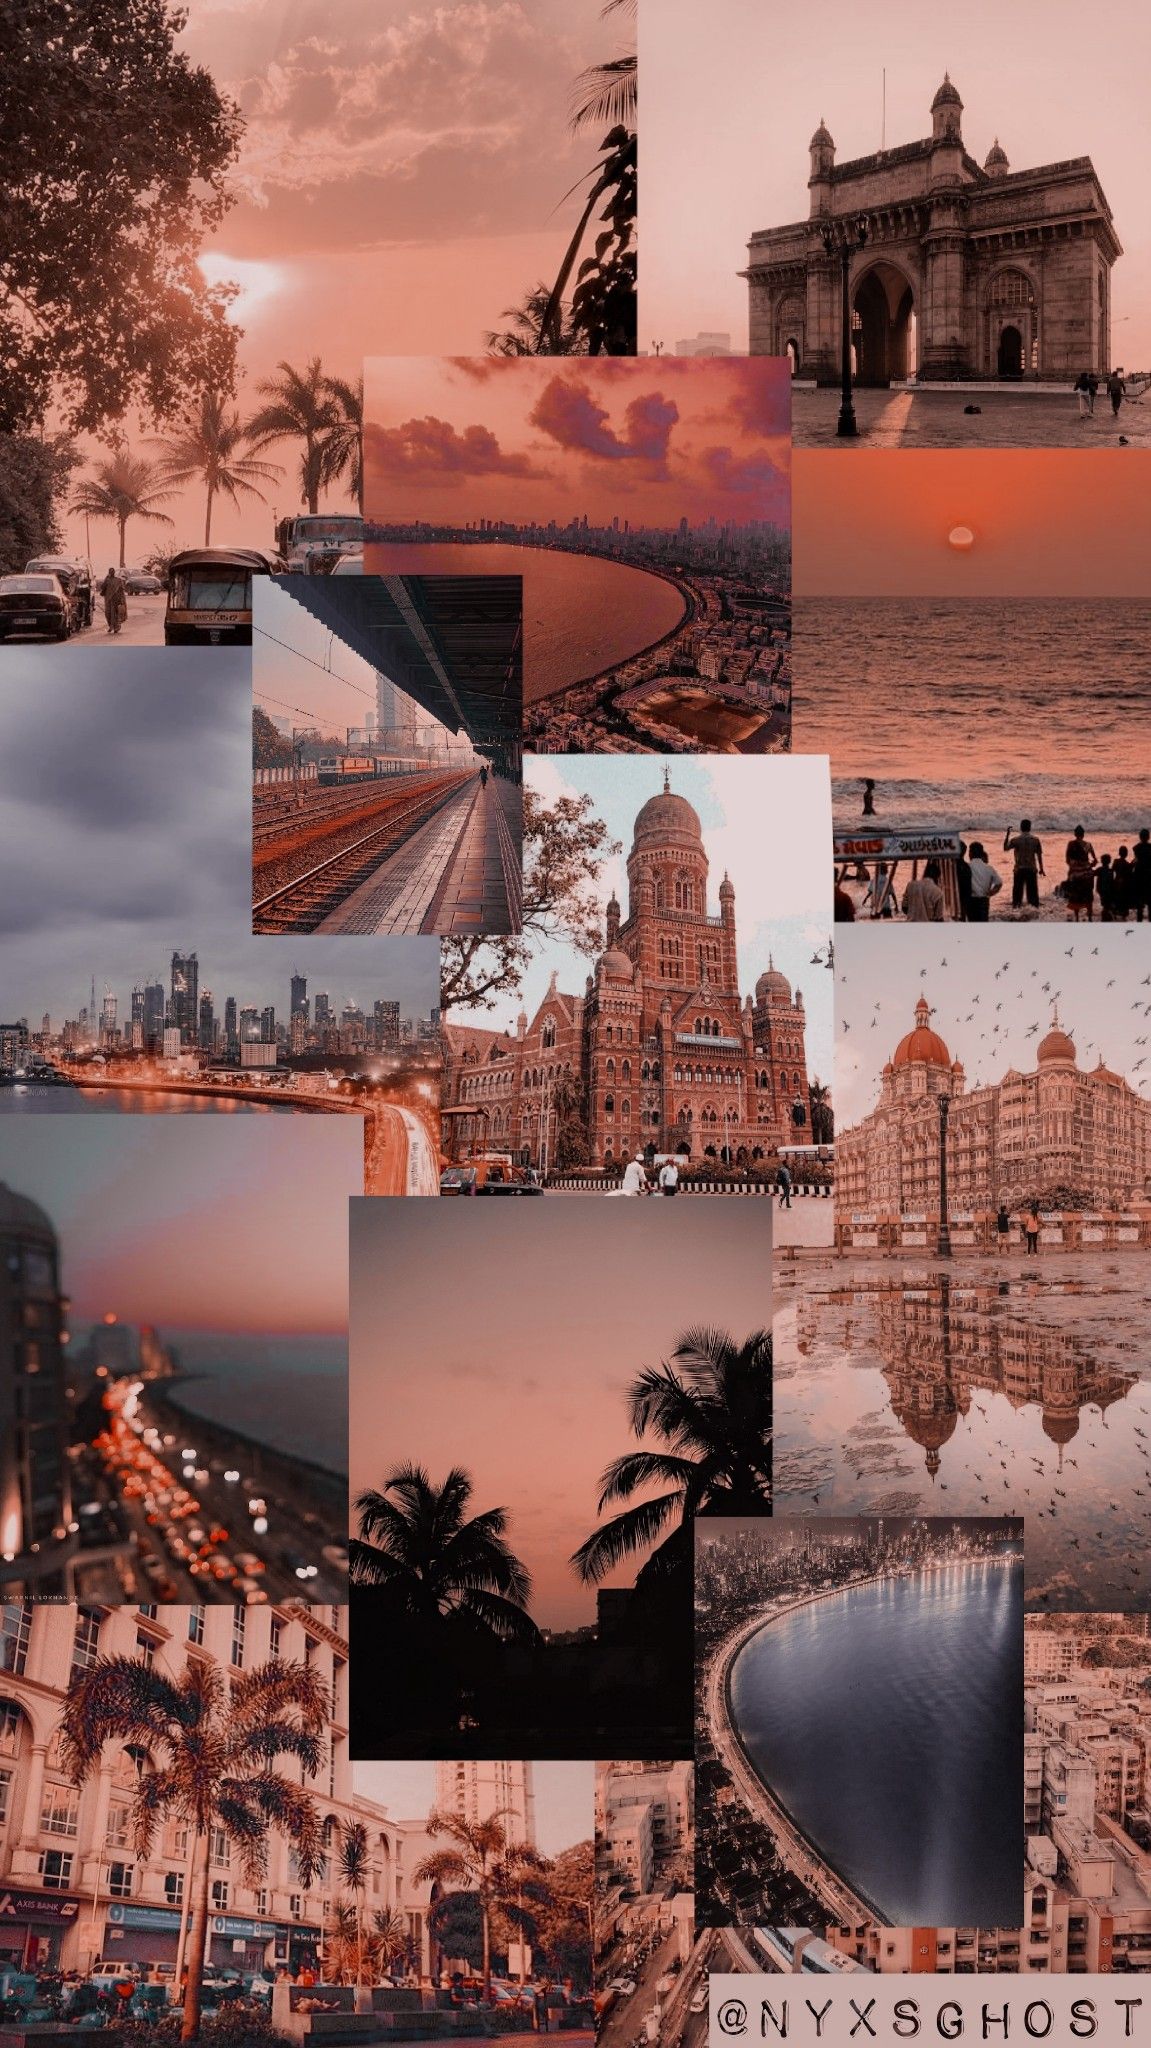 Mumbai Aesthetic Wallpaper. iPhone wallpaper themes, Aesthetic desktop wallpaper, iPhone wallpaper tumblr aesthetic